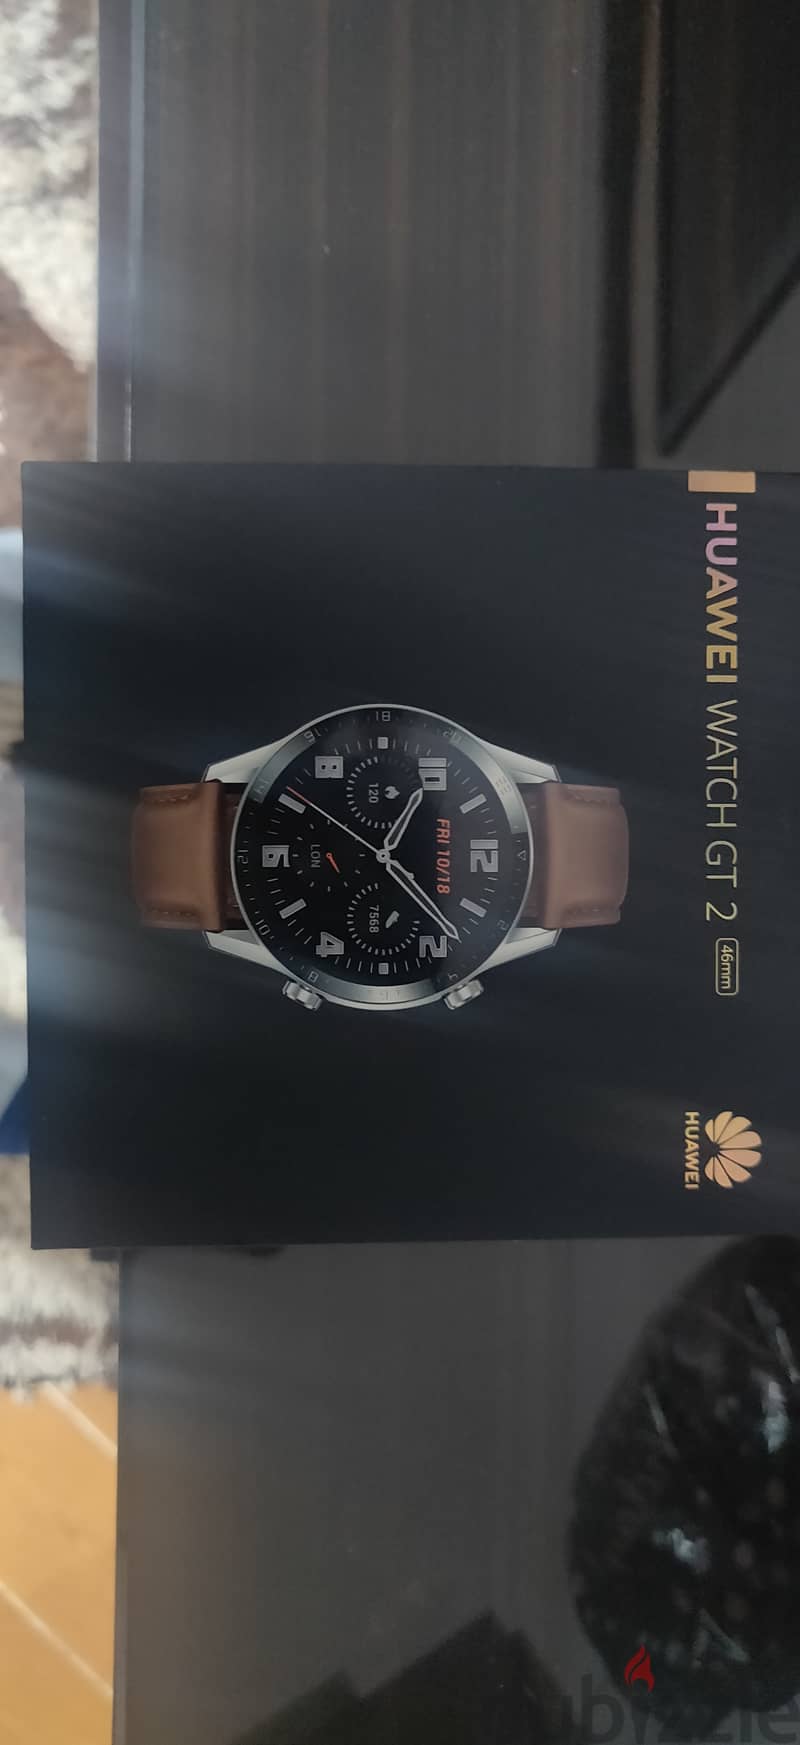 Huawei Watch GT 2 4